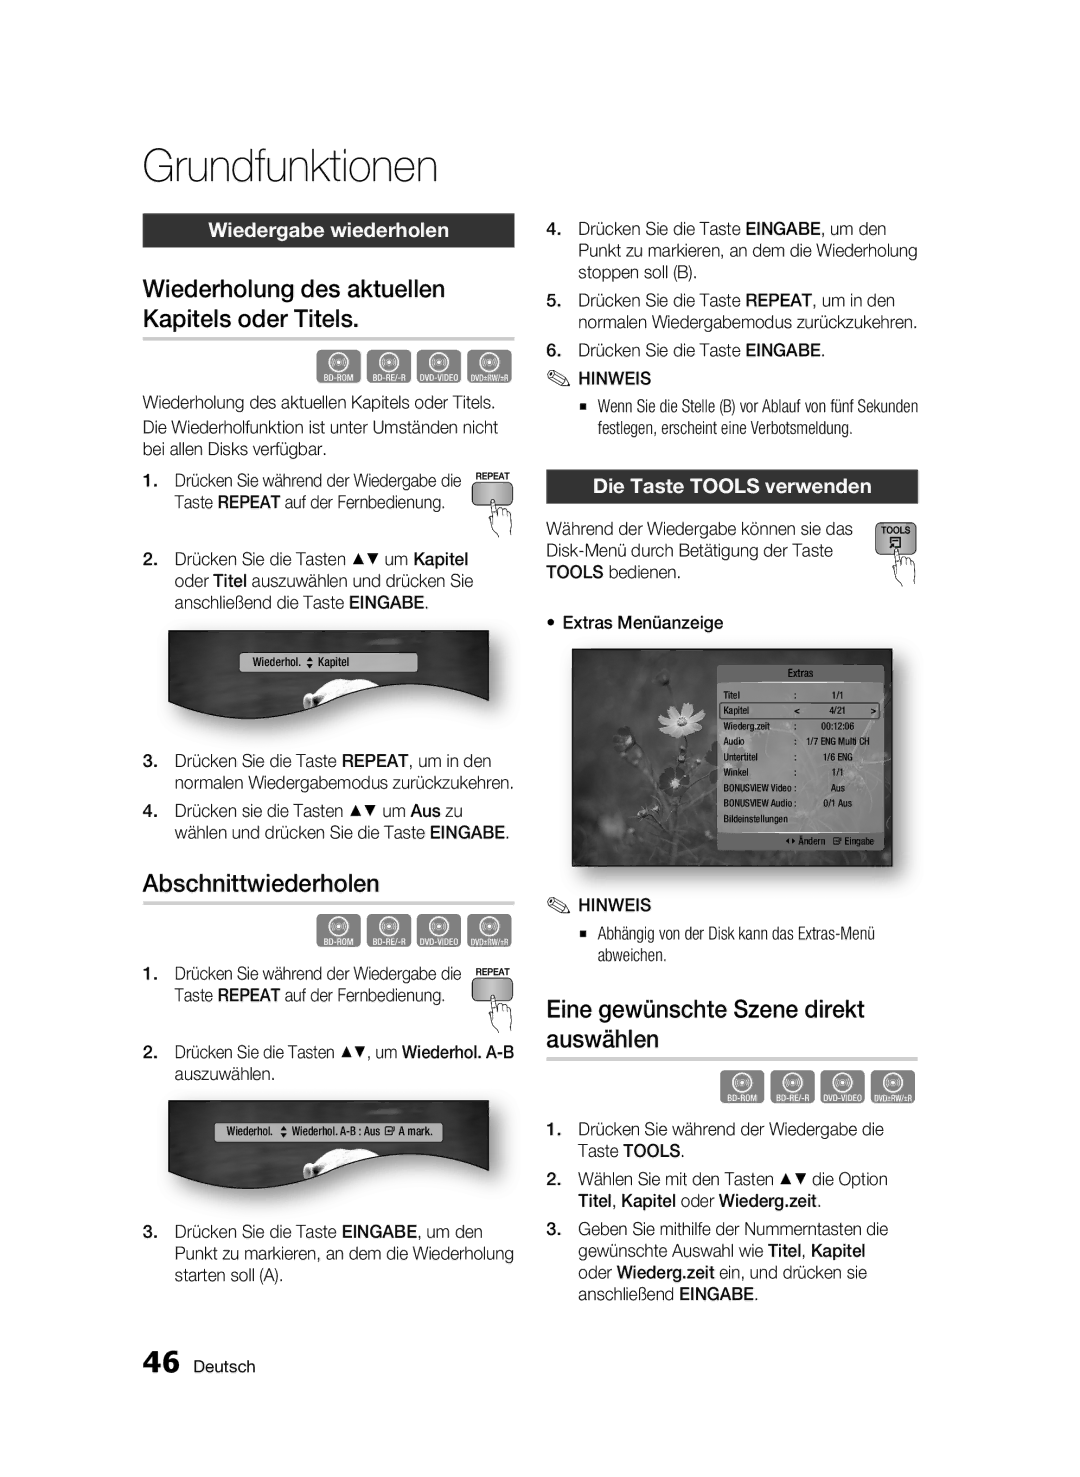 Samsung BD-C7500W/EDC manual Wiederholung des aktuellen Kapitels oder Titels, Abschnittwiederholen, Wiedergabe wiederholen 